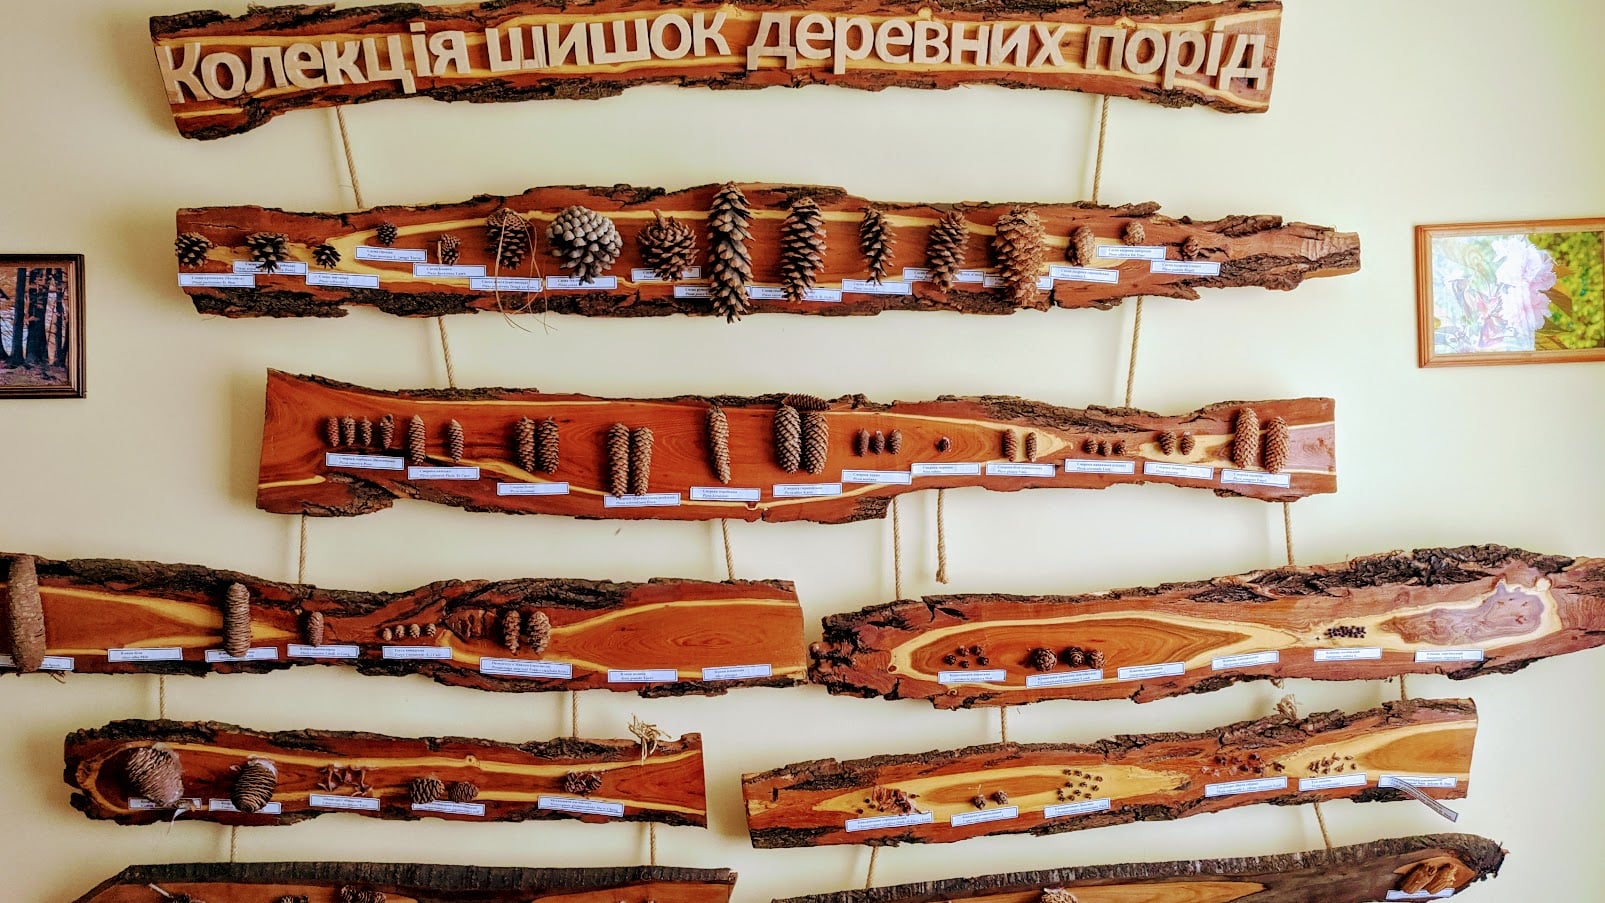 Колекція шишок деревних порід НПП Гуцульщина